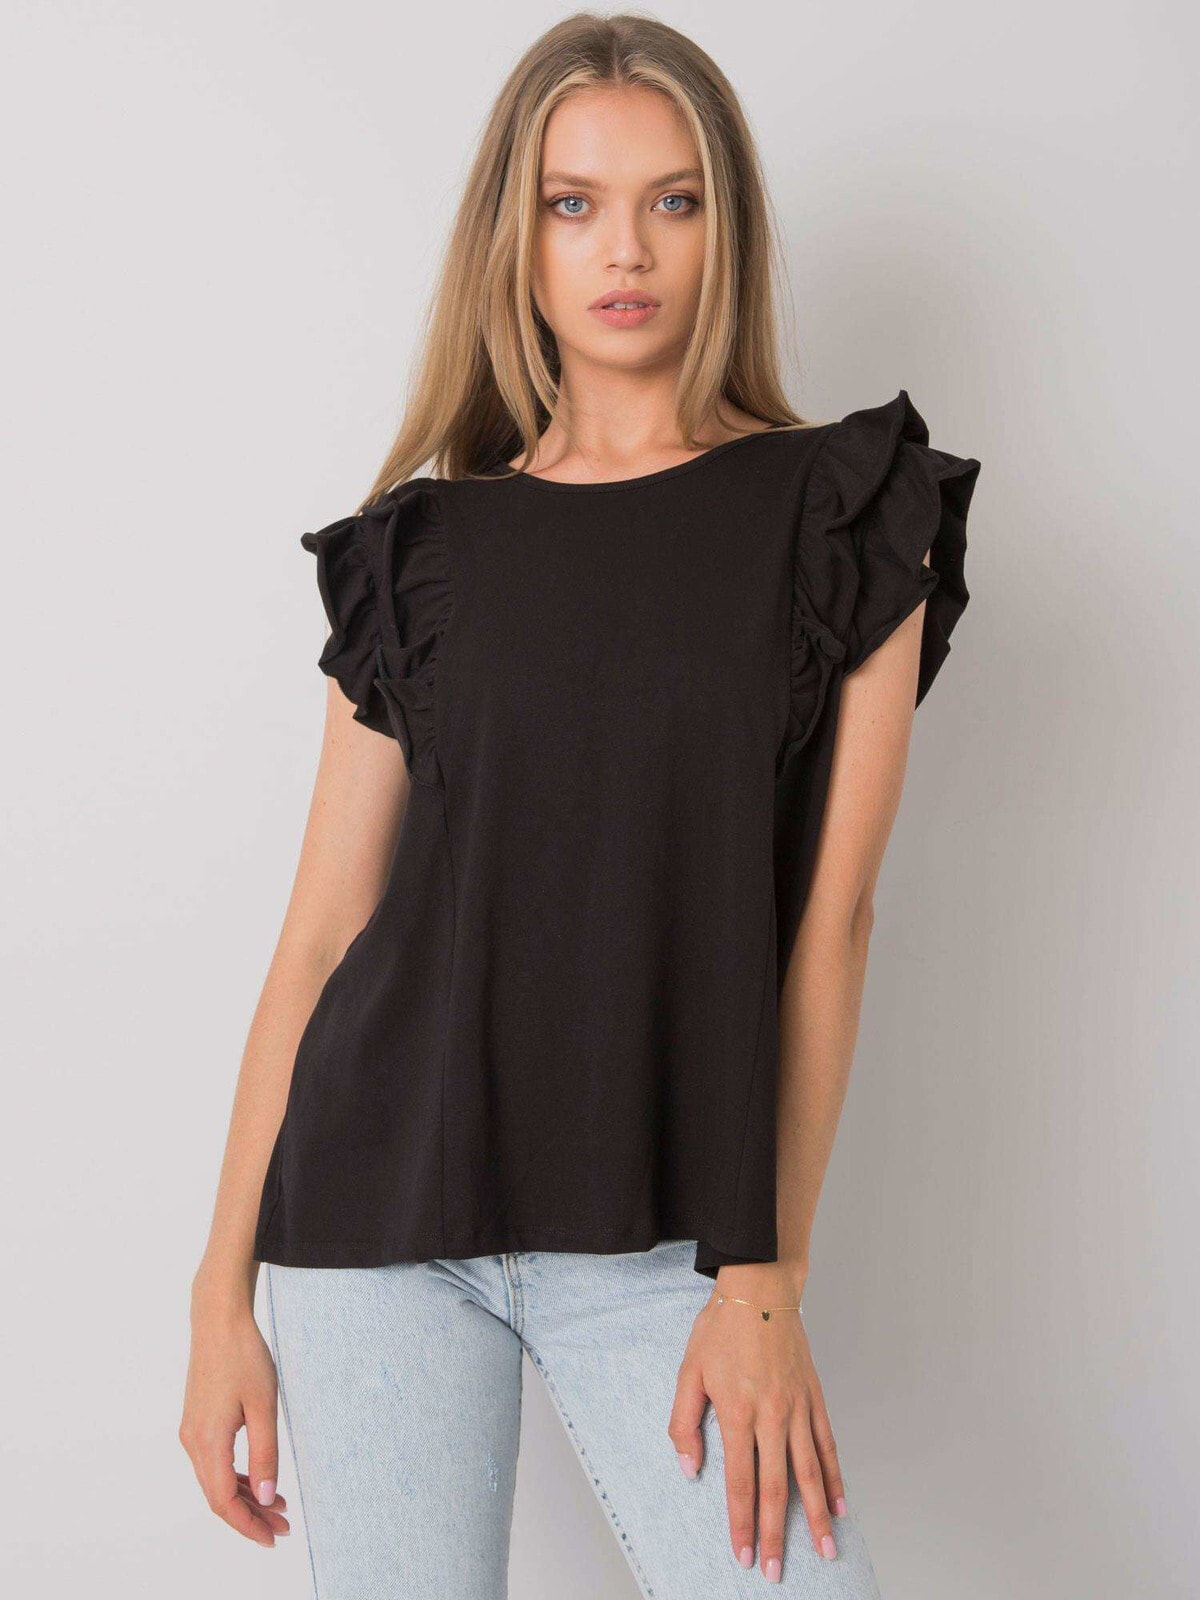 Женская блузка с коротким объемным рукавом - черная Factory Price